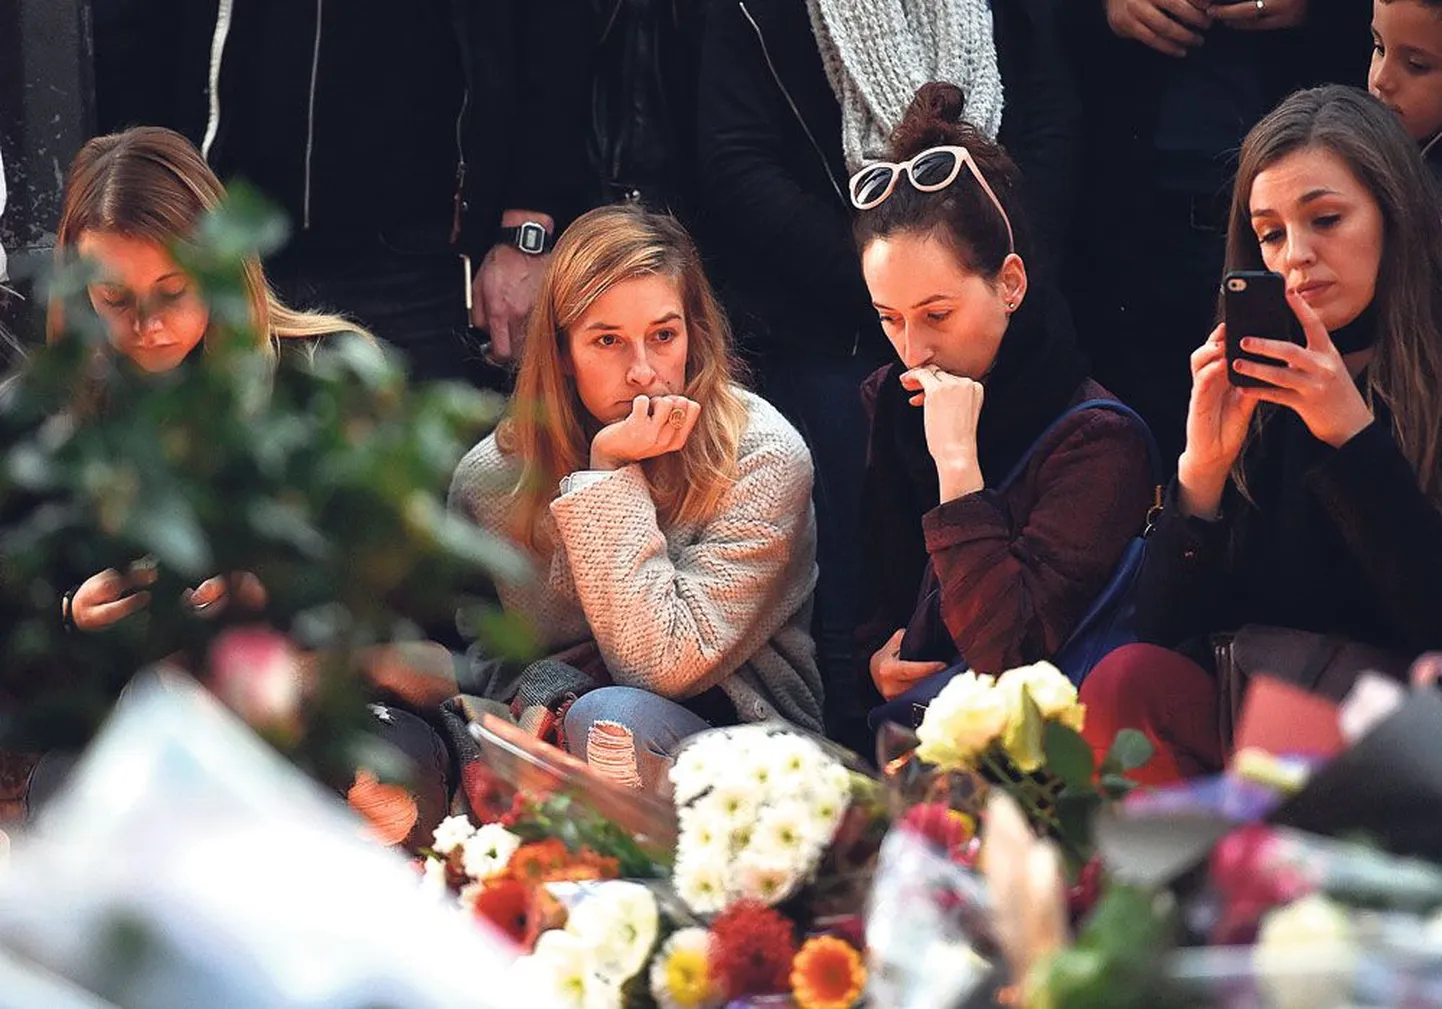 Париж скорбит о погибших от рук террористов. Люди собираются в разных местах города, чтобы выразить свою скорбь и поддержать друг друга. Но больше всего людей приходит туда, где прогремели взрывы и выстрелы, одно из таких мест – кафе 
Le Carillon.